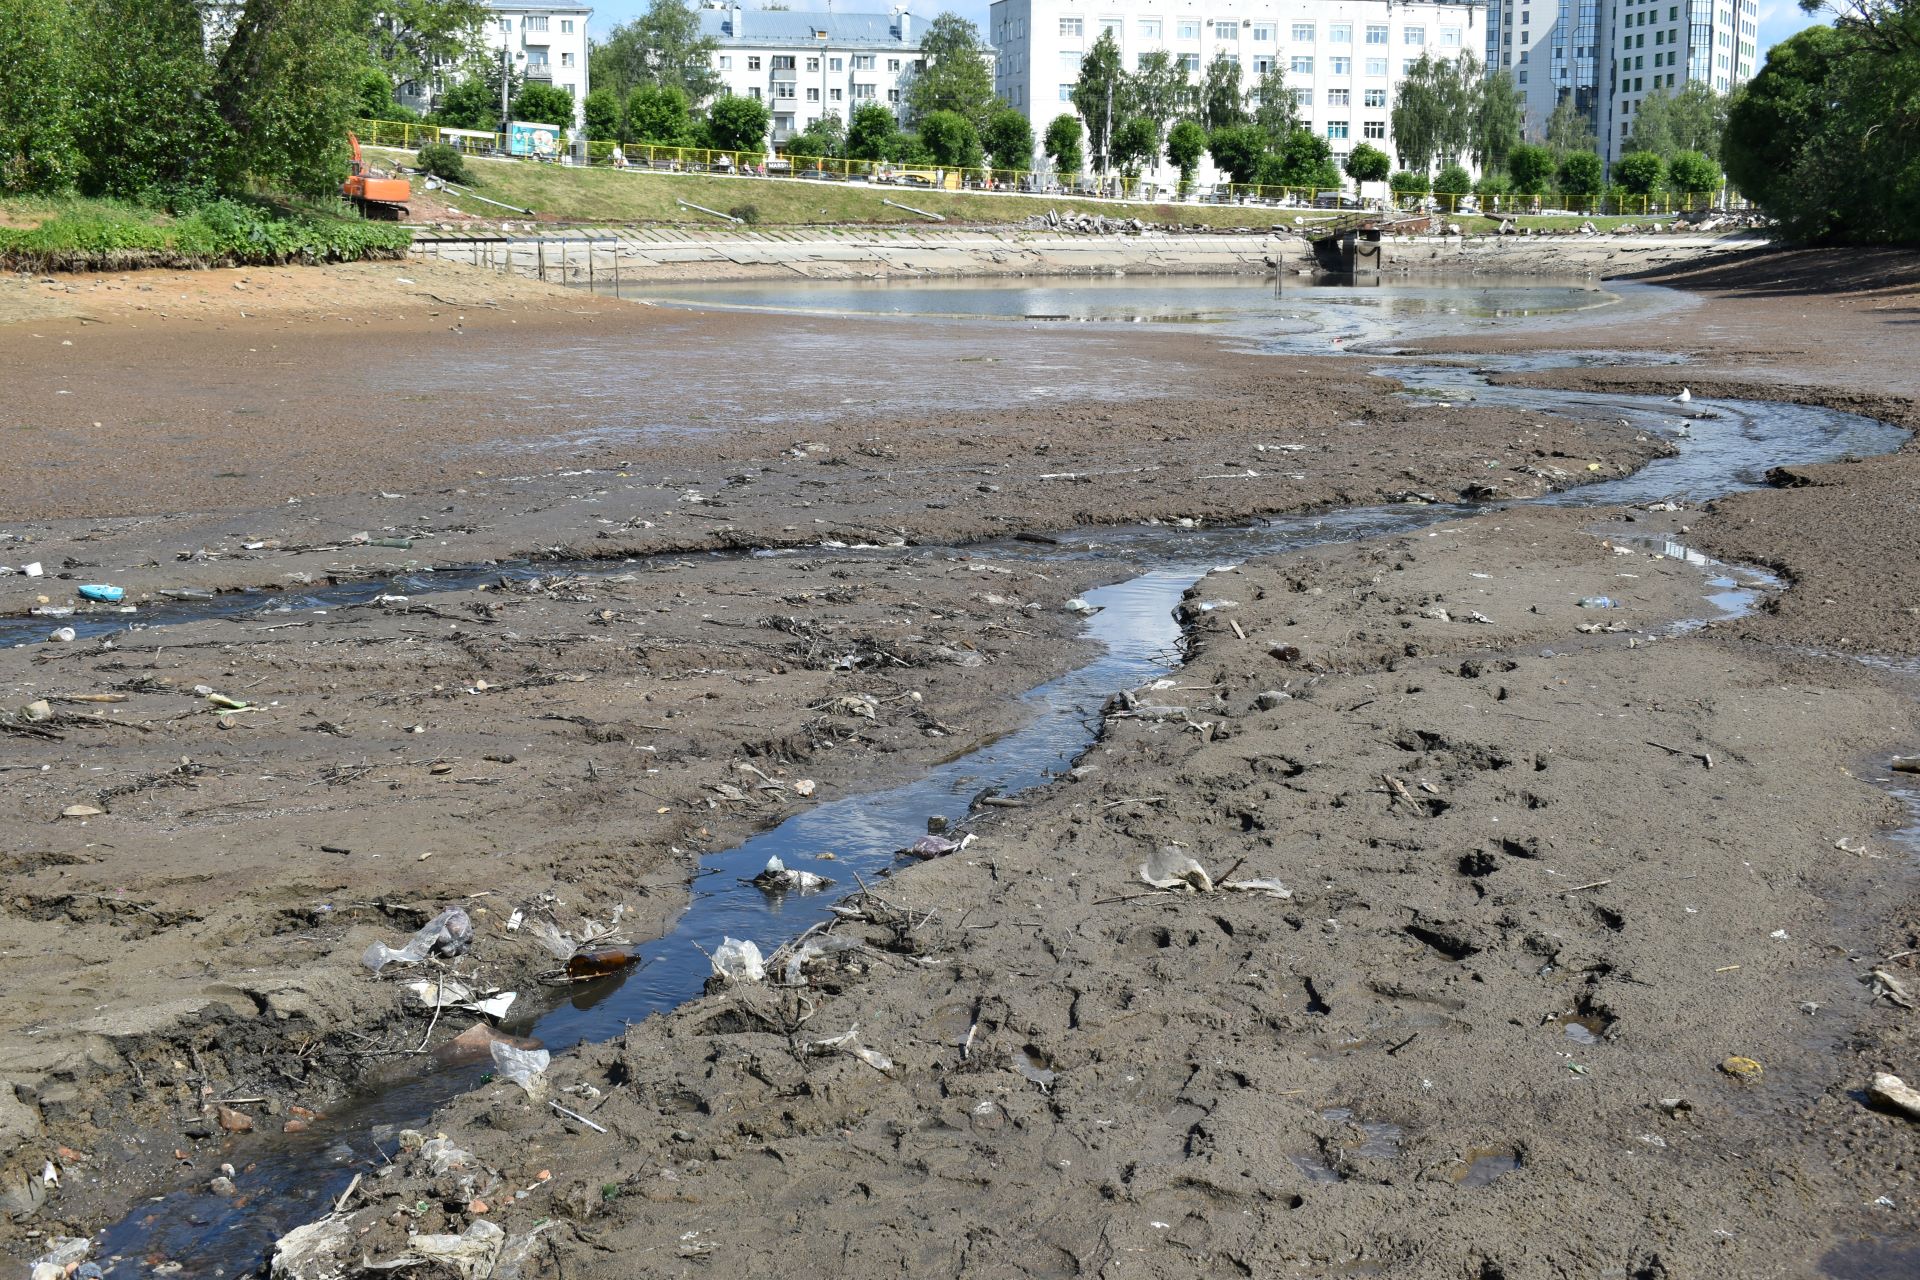 Опасные игры и ужасный запах: что происходит на месте иссушенного пруда в парке Кирова